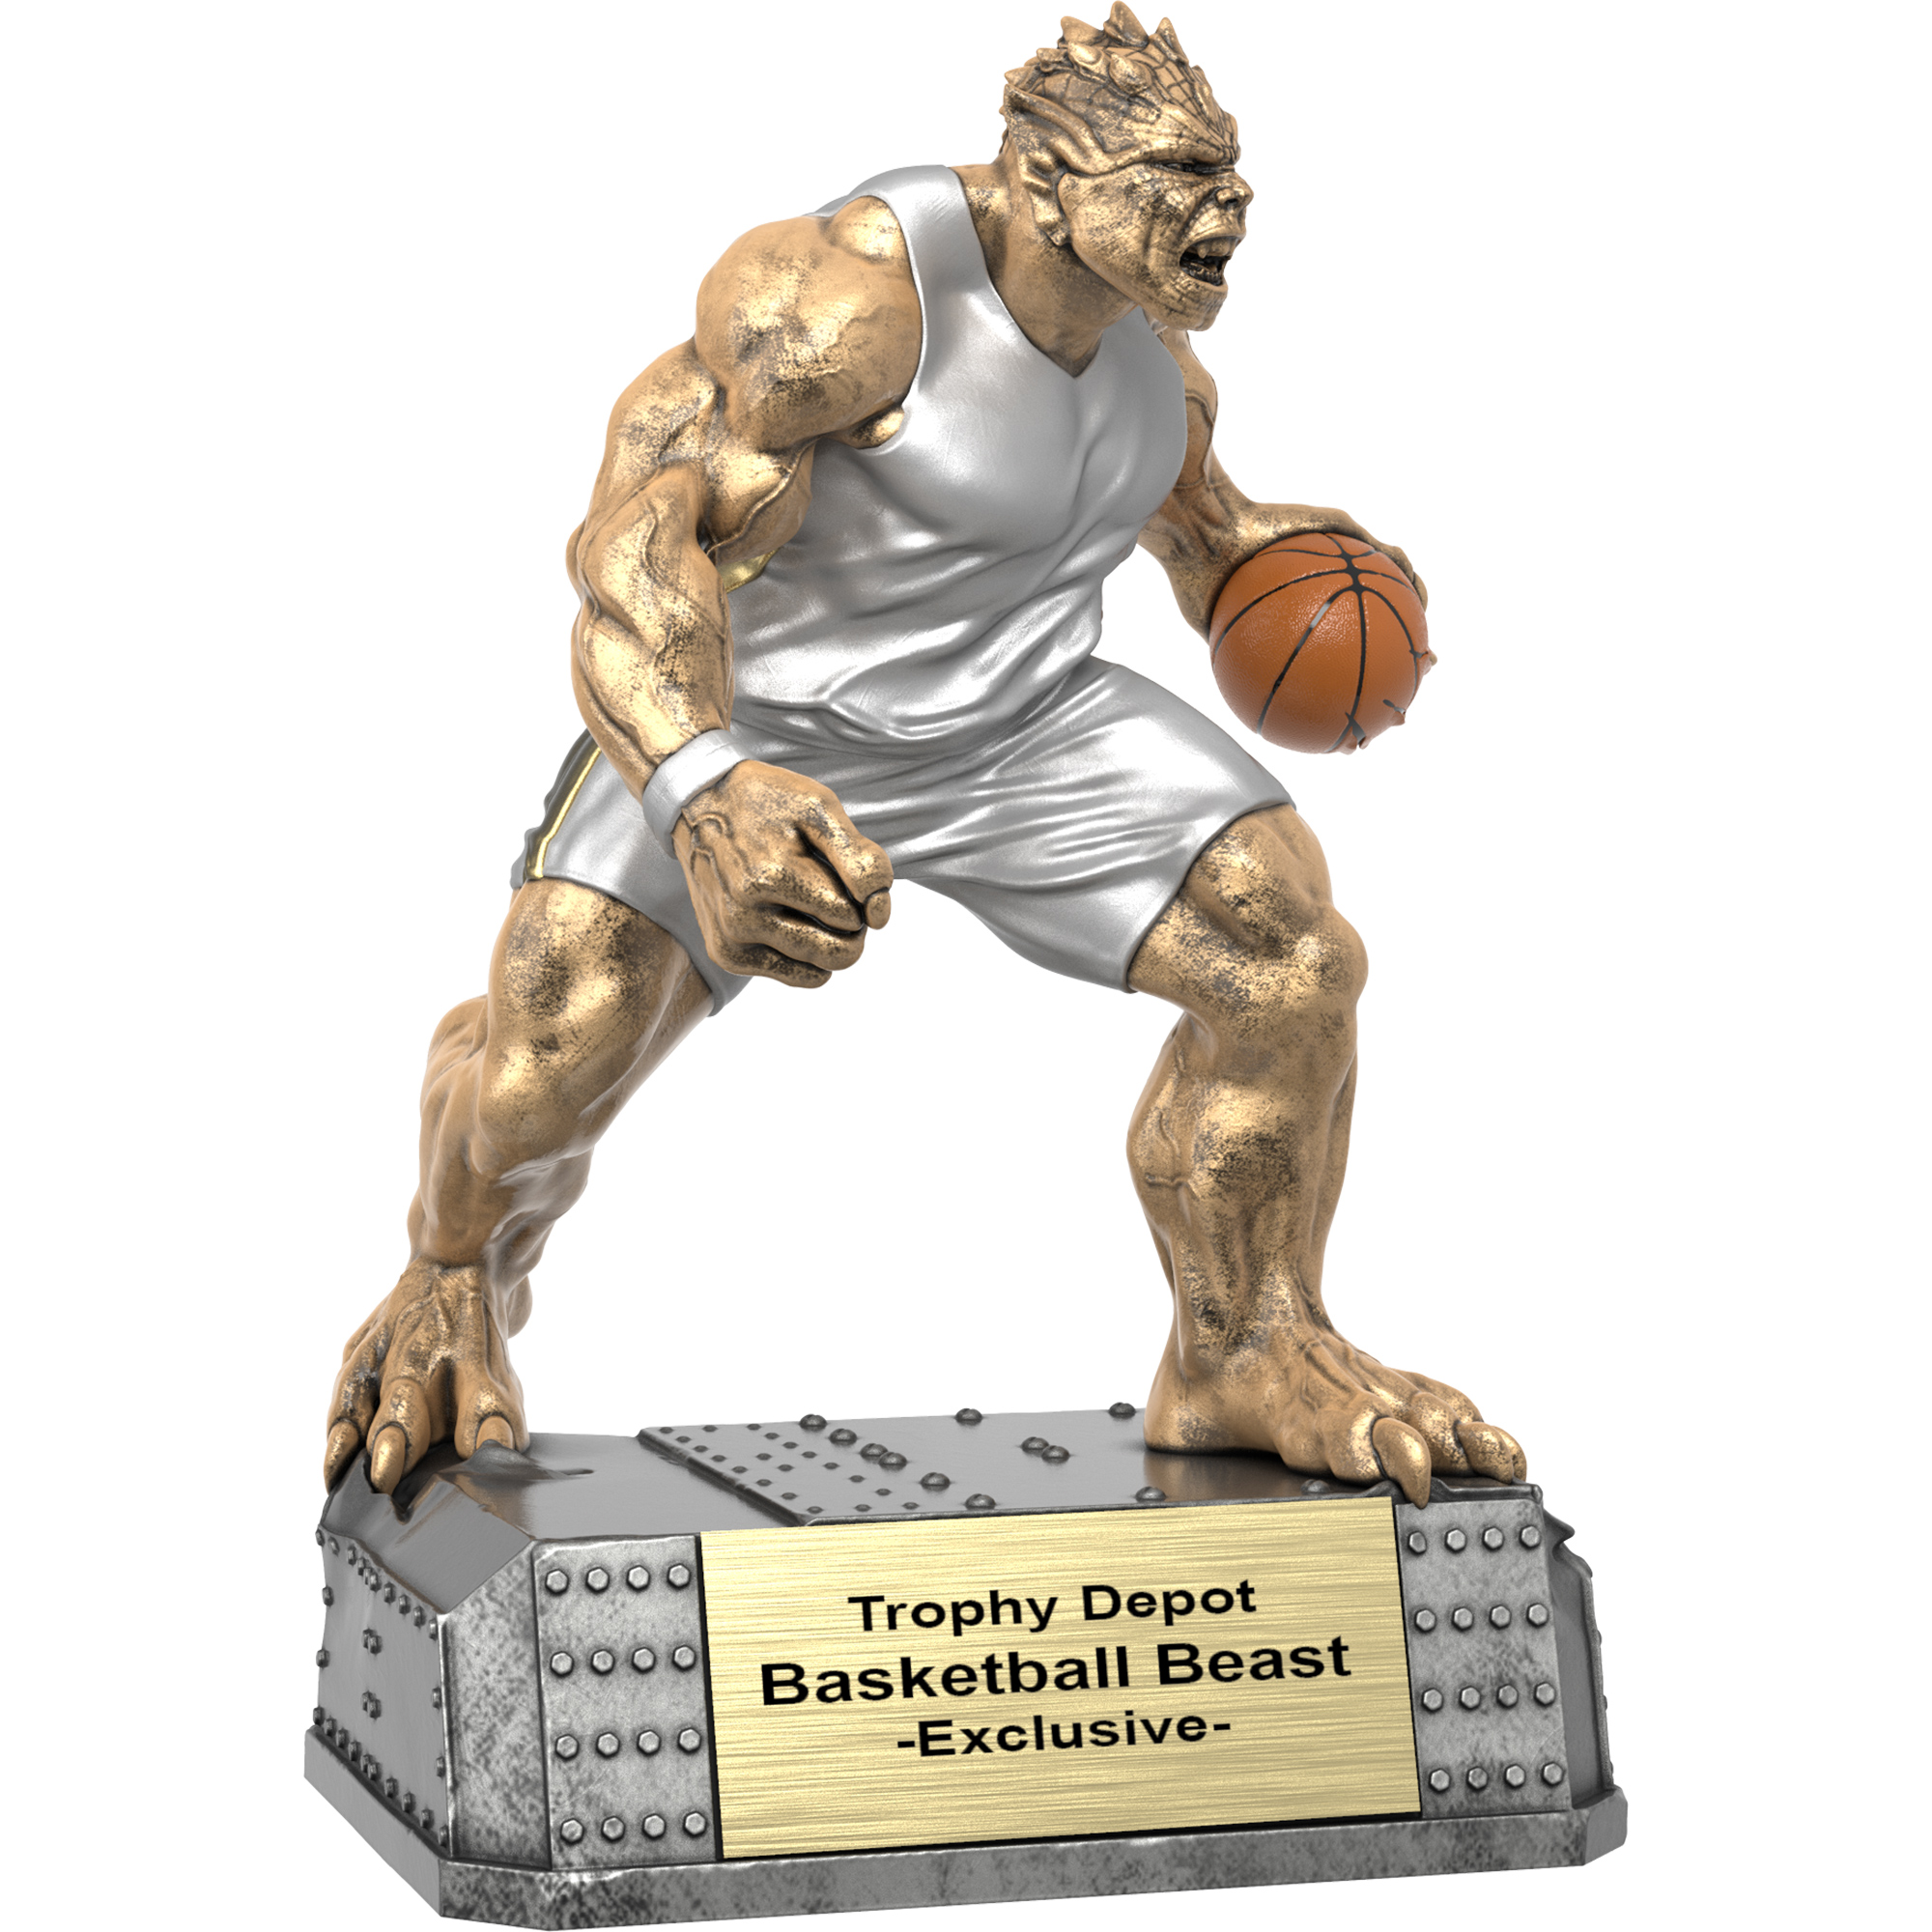 Basketball Beast, Monster Sculpture Trophy - 6.75 inch